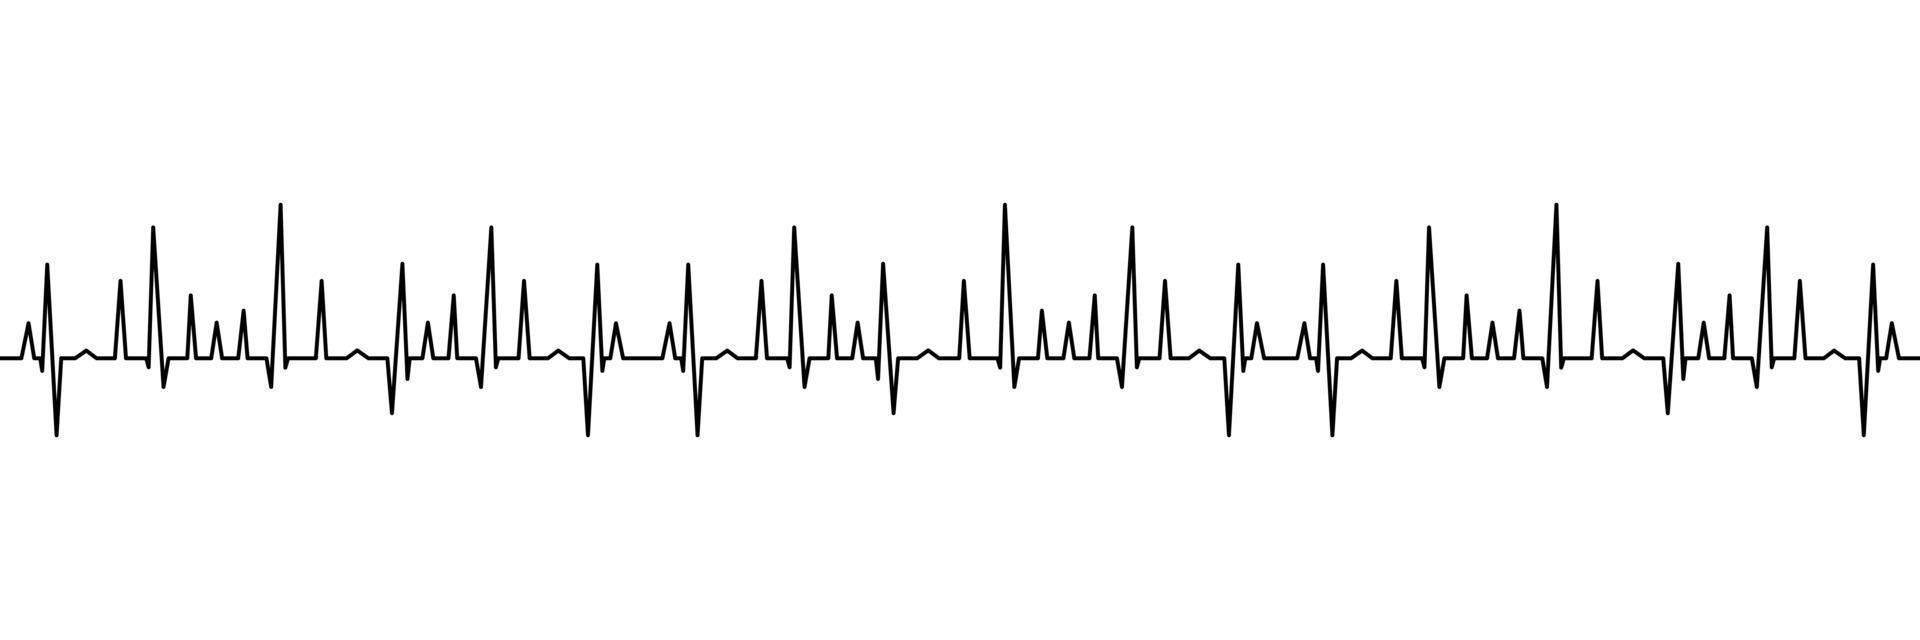 Heart Beat Diagram Illustration. Vector Illustration